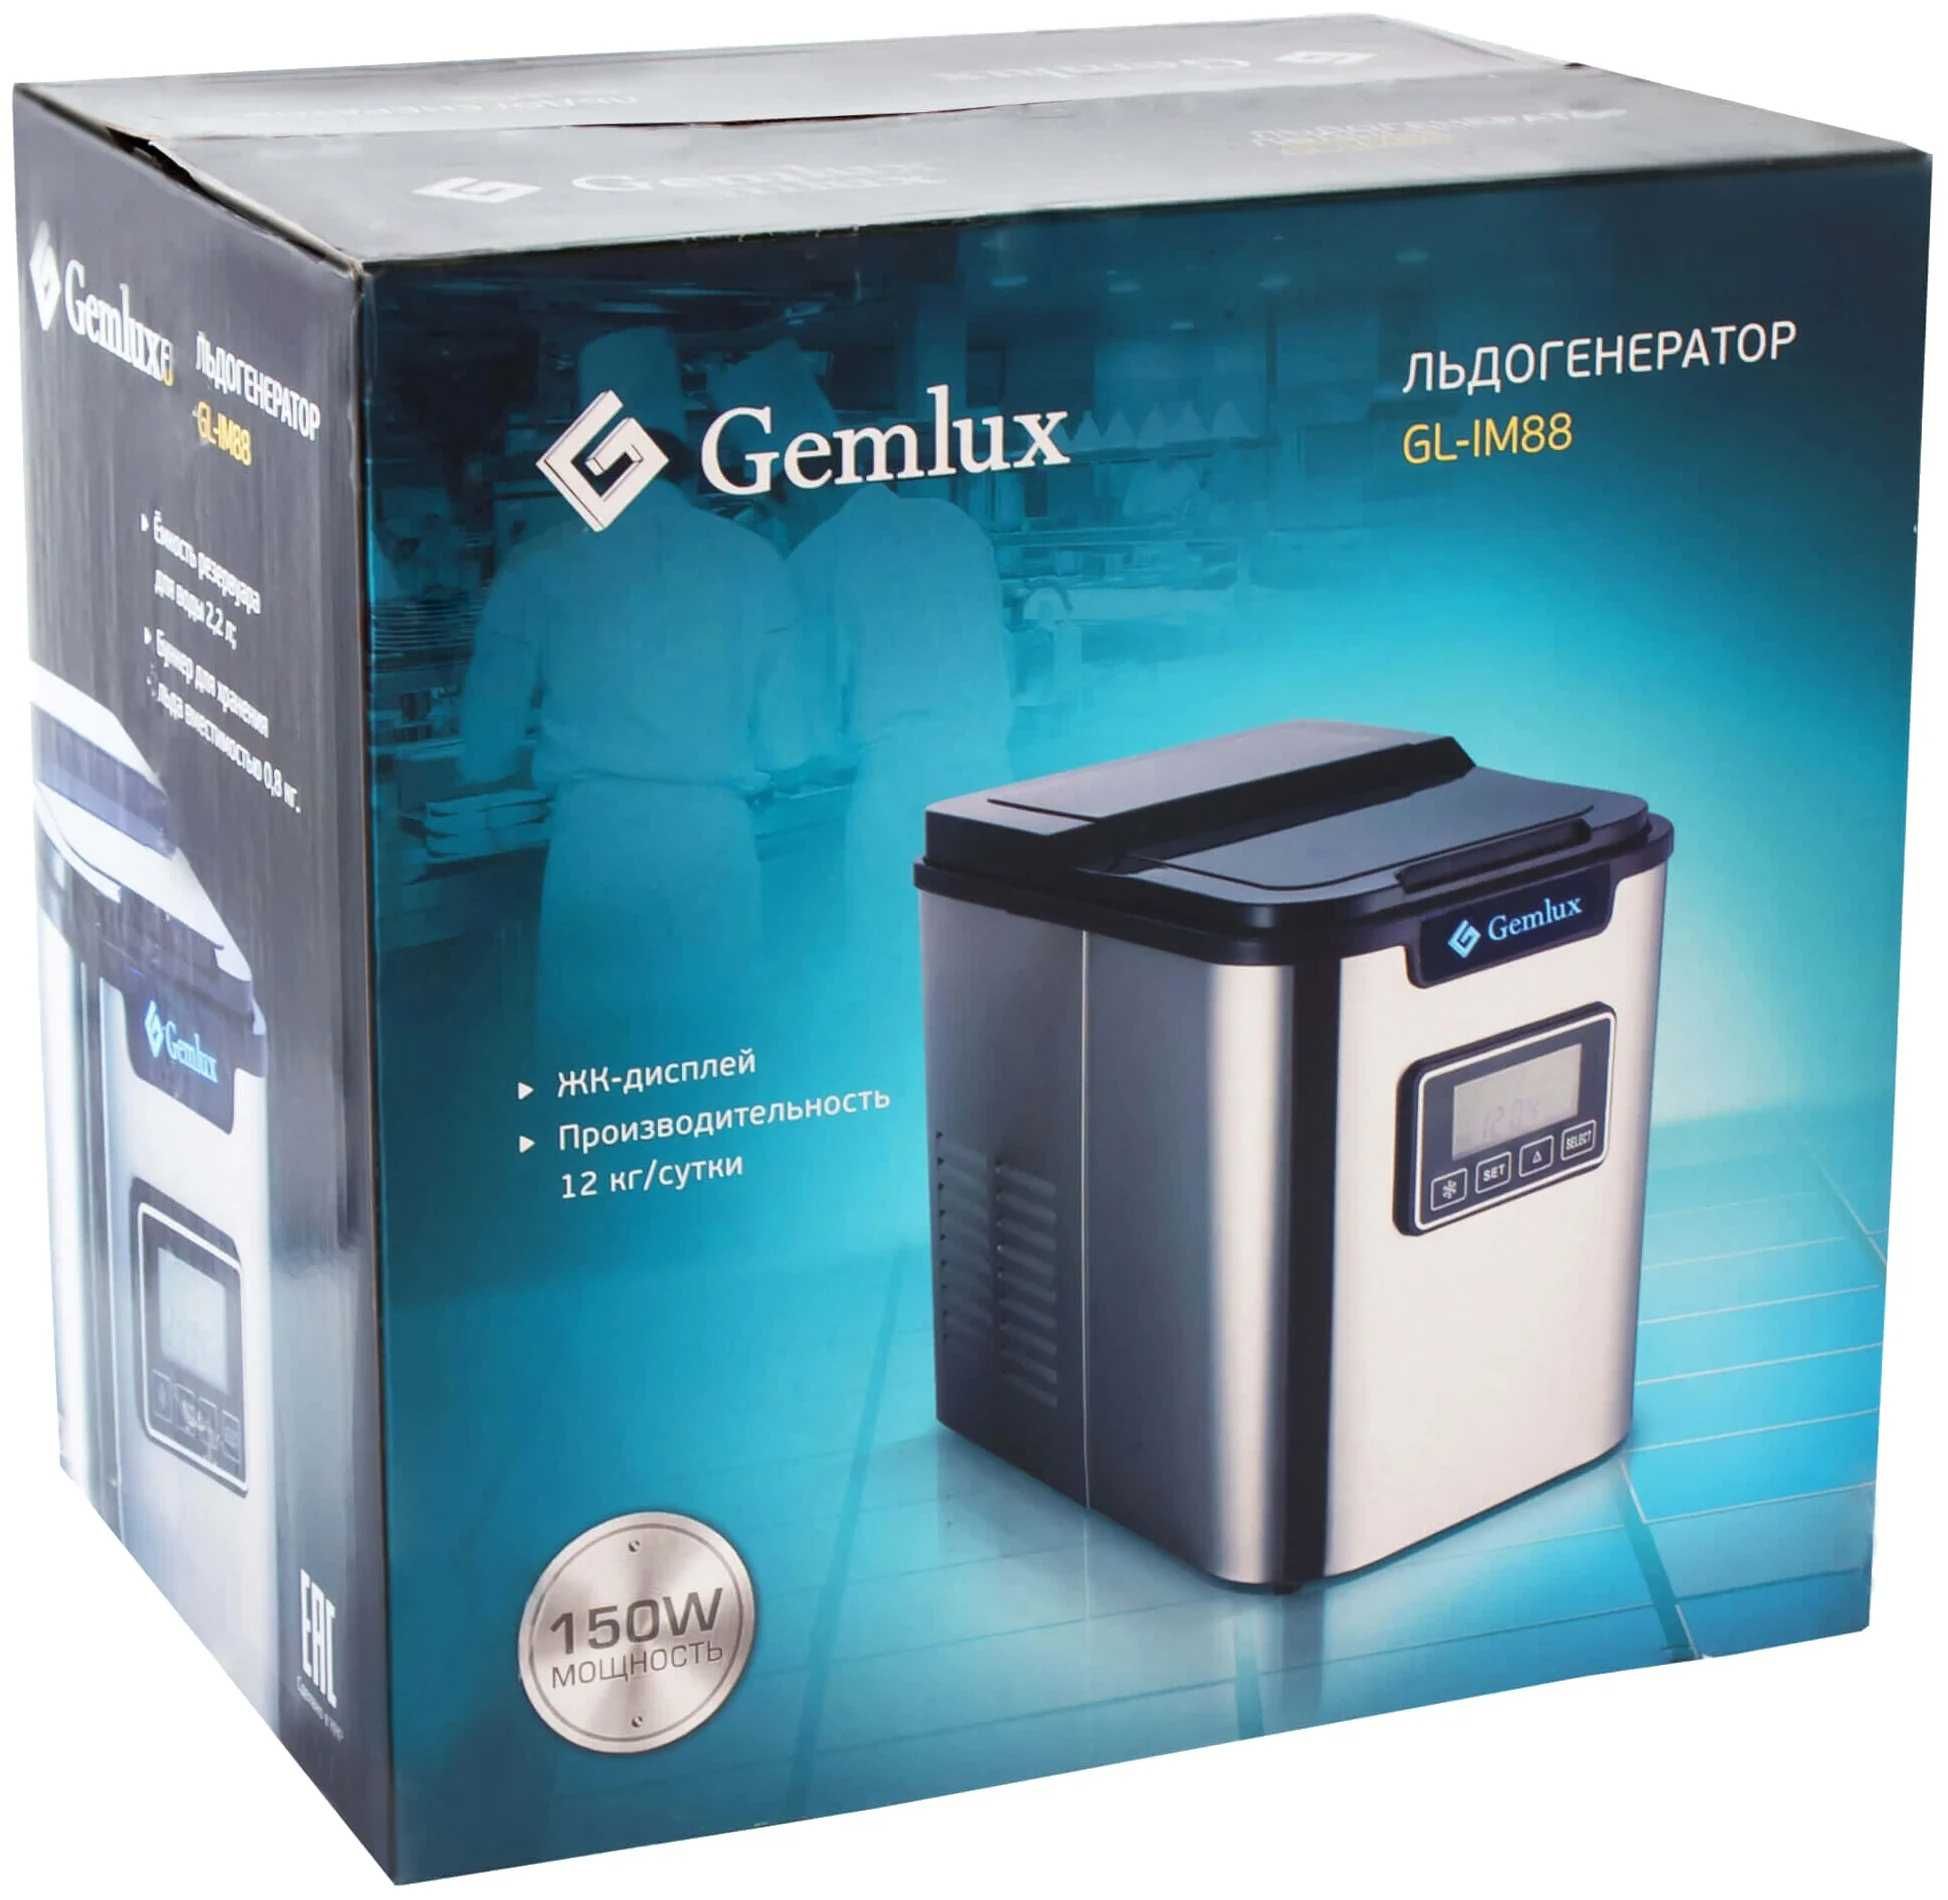 Автомобильный льдогенератор Gemlux новый в упаковке с доставкой